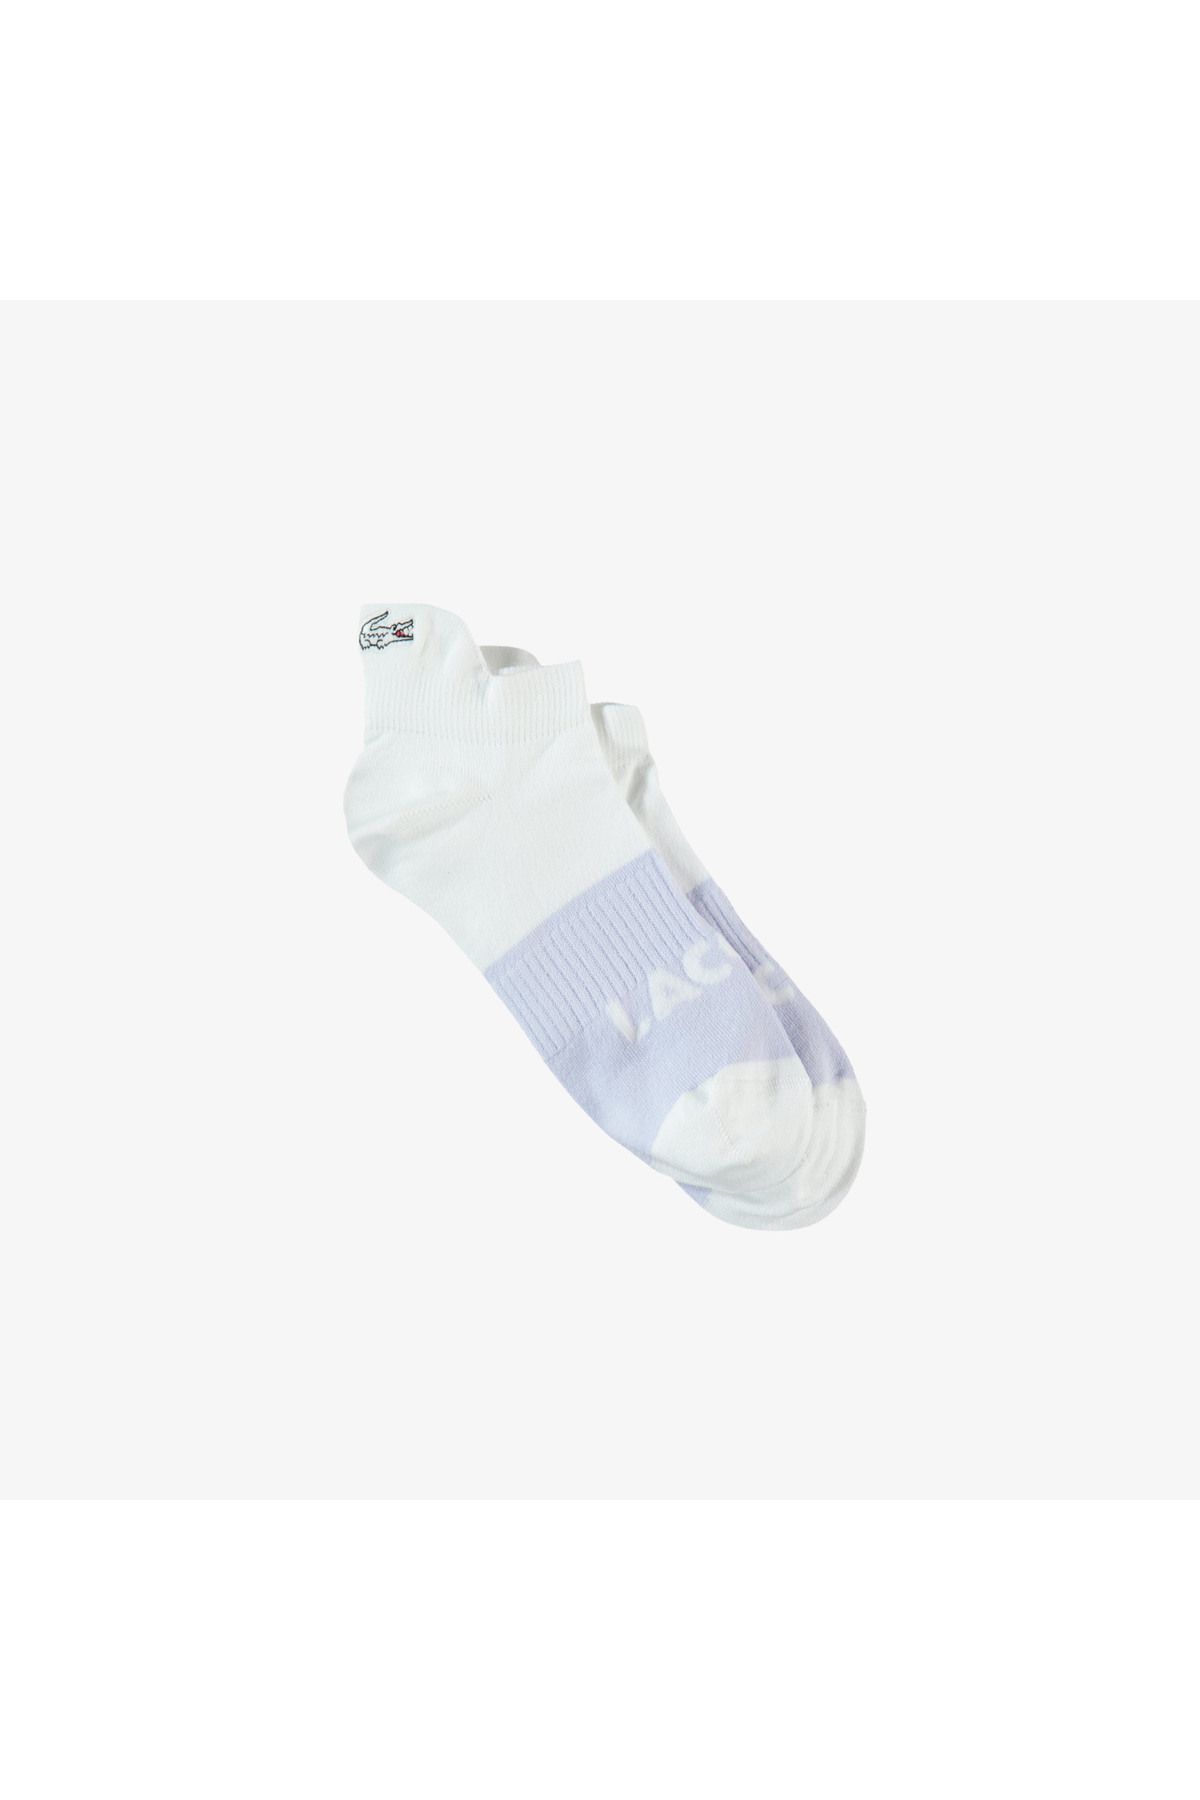 Lacoste Kadın Renk Bloklu Beyaz Çorap